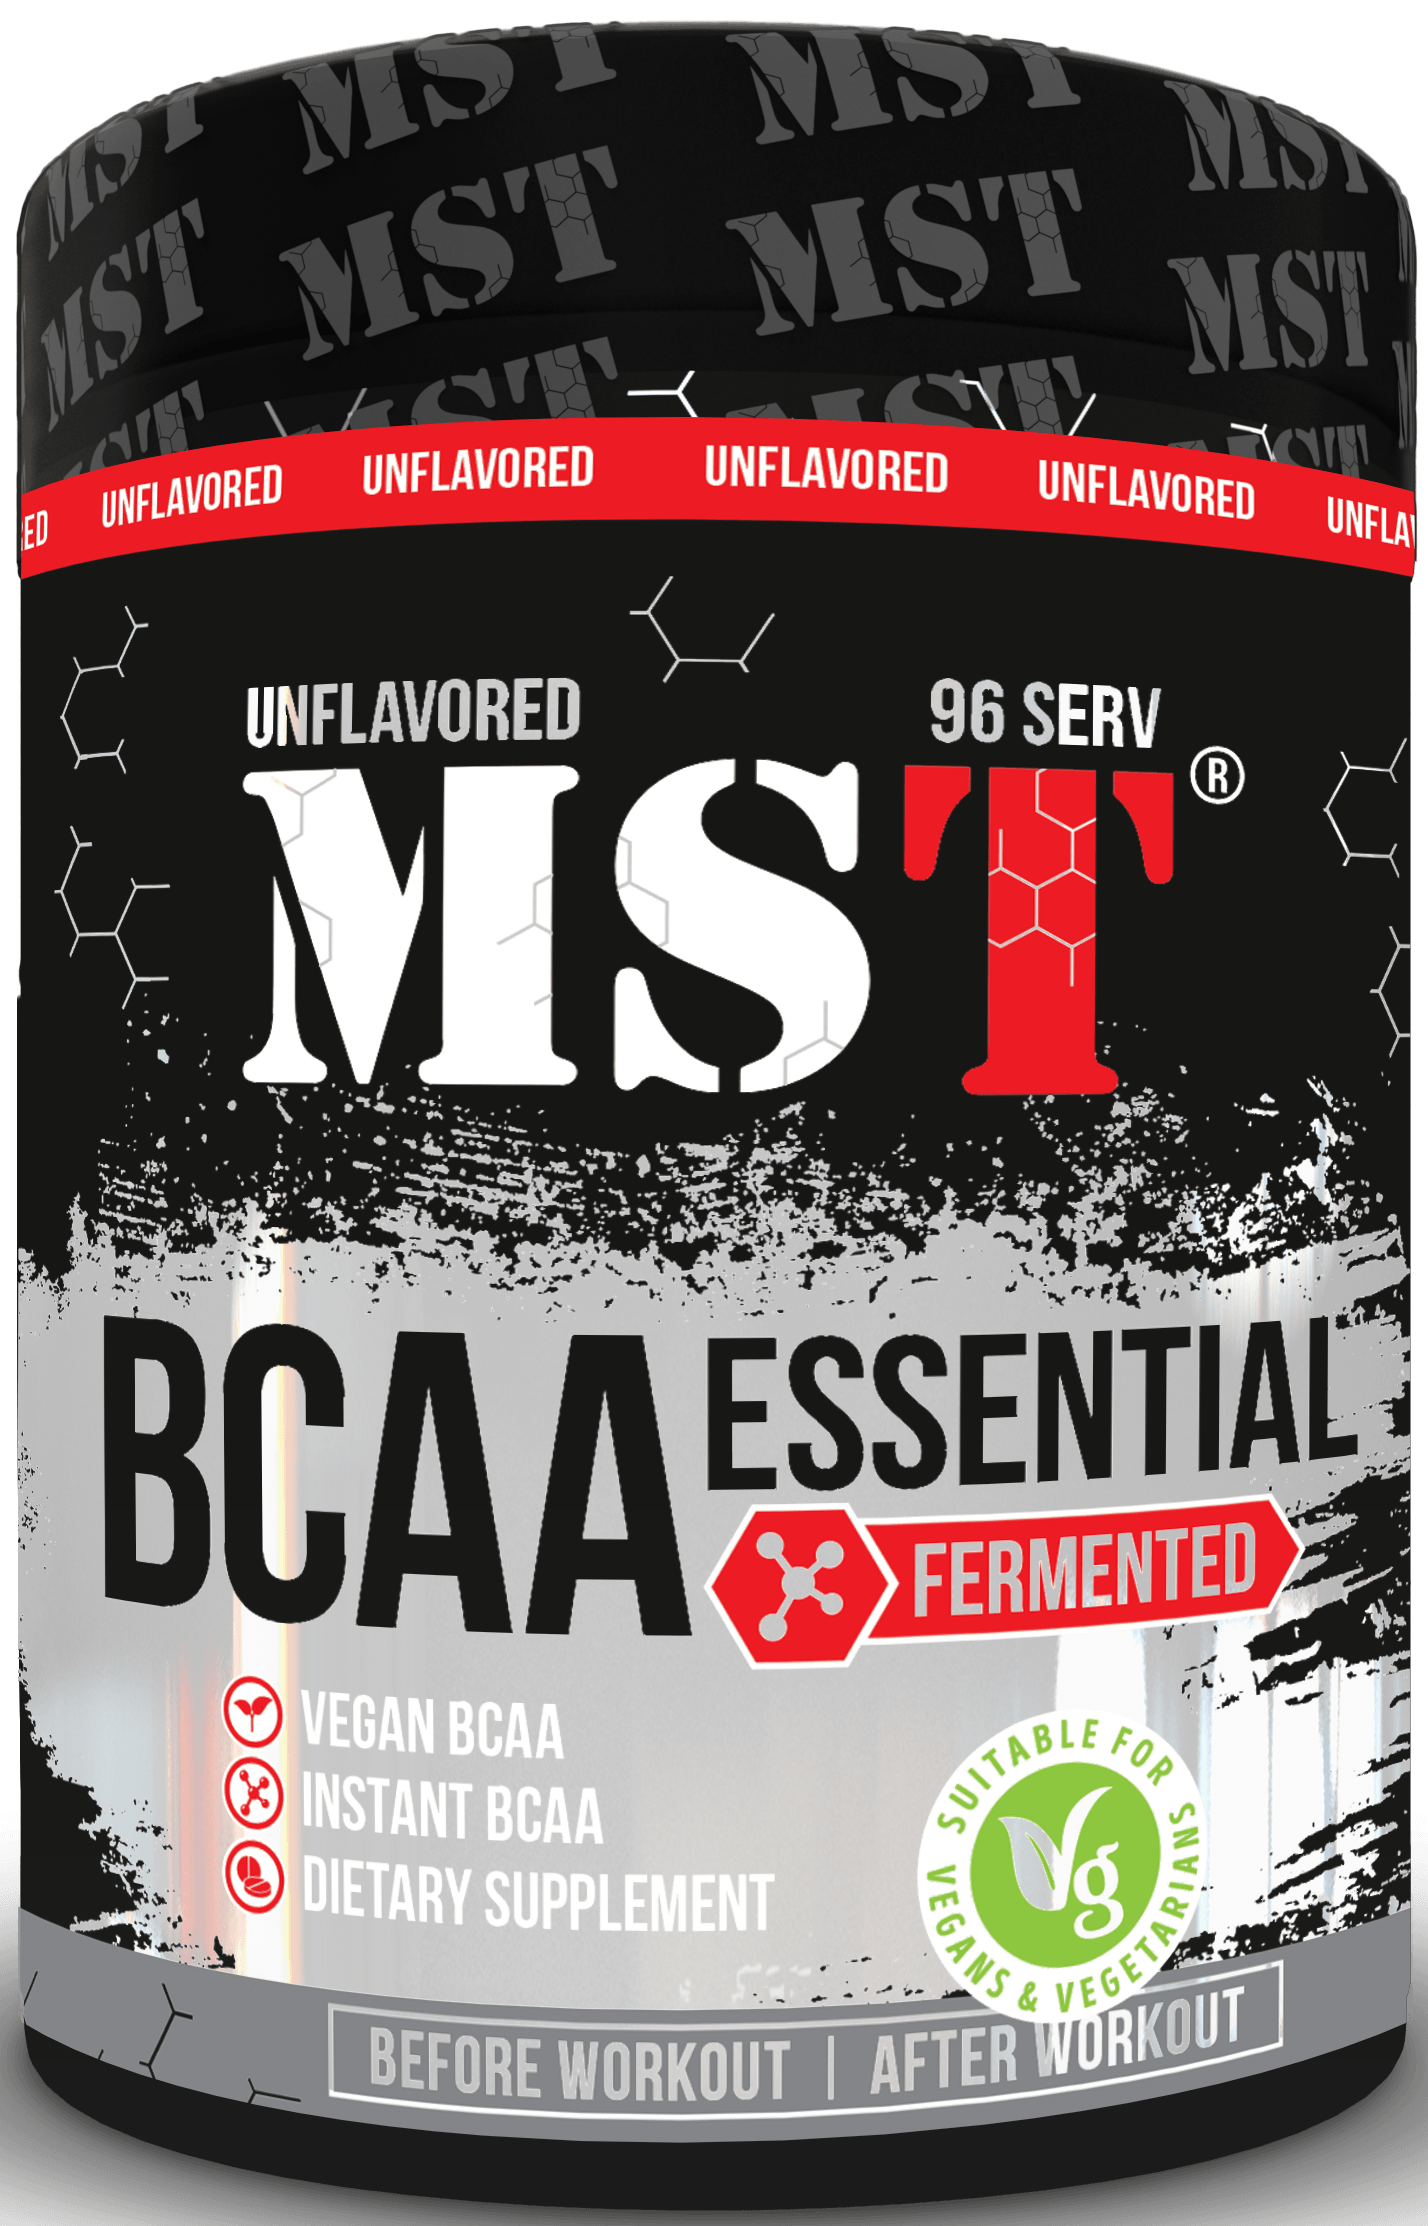 BCAA Essential Fermented, 480 г, MST Nutrition. BCAA. Снижение веса Восстановление Антикатаболические свойства Сухая мышечная масса 